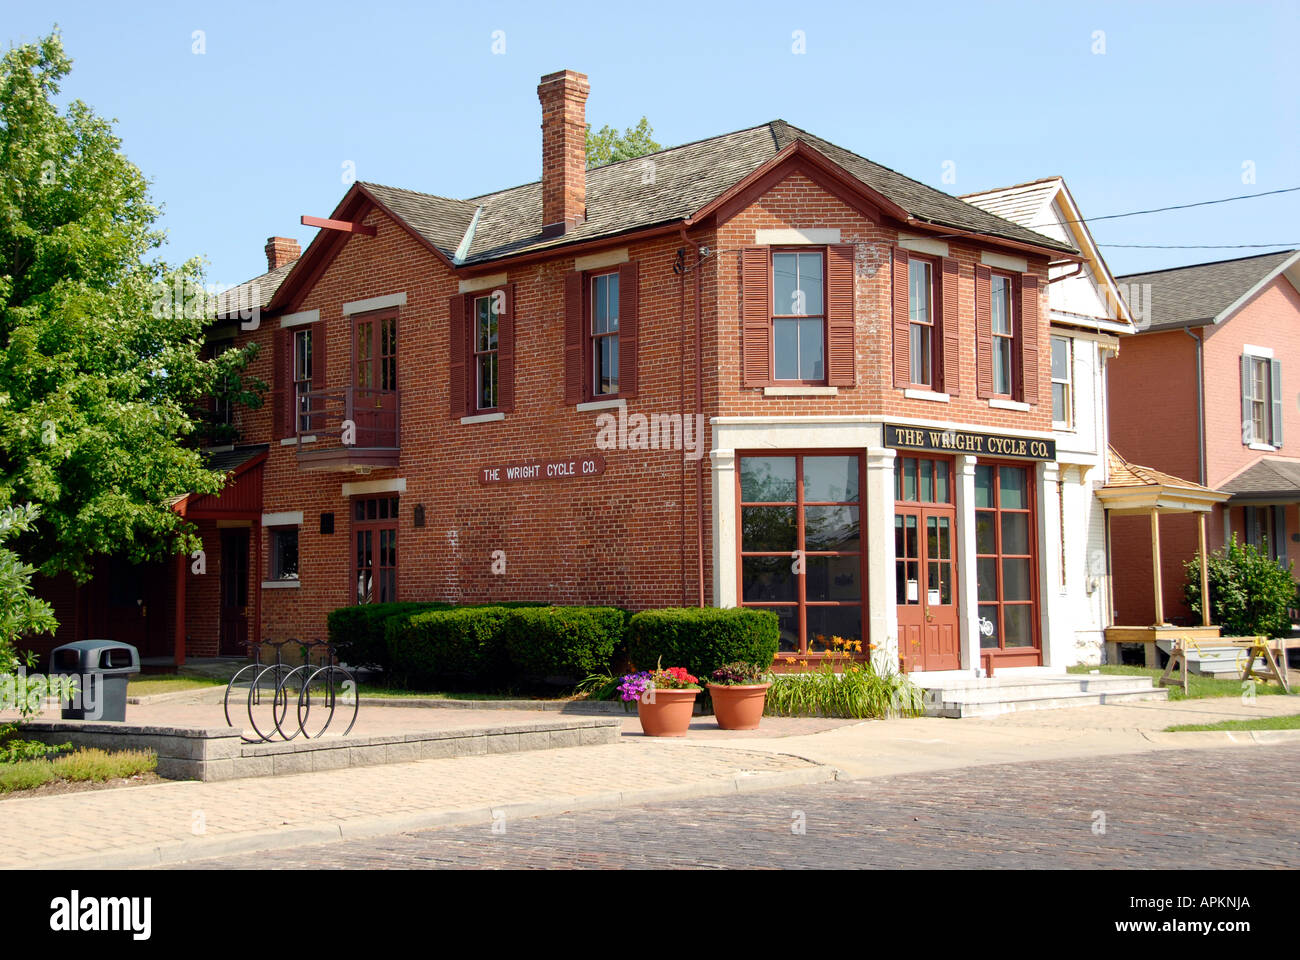 L'originale dei fratelli Wright Società del ciclo è un edificio situato nella città di Dayton, Ohio OH Foto Stock